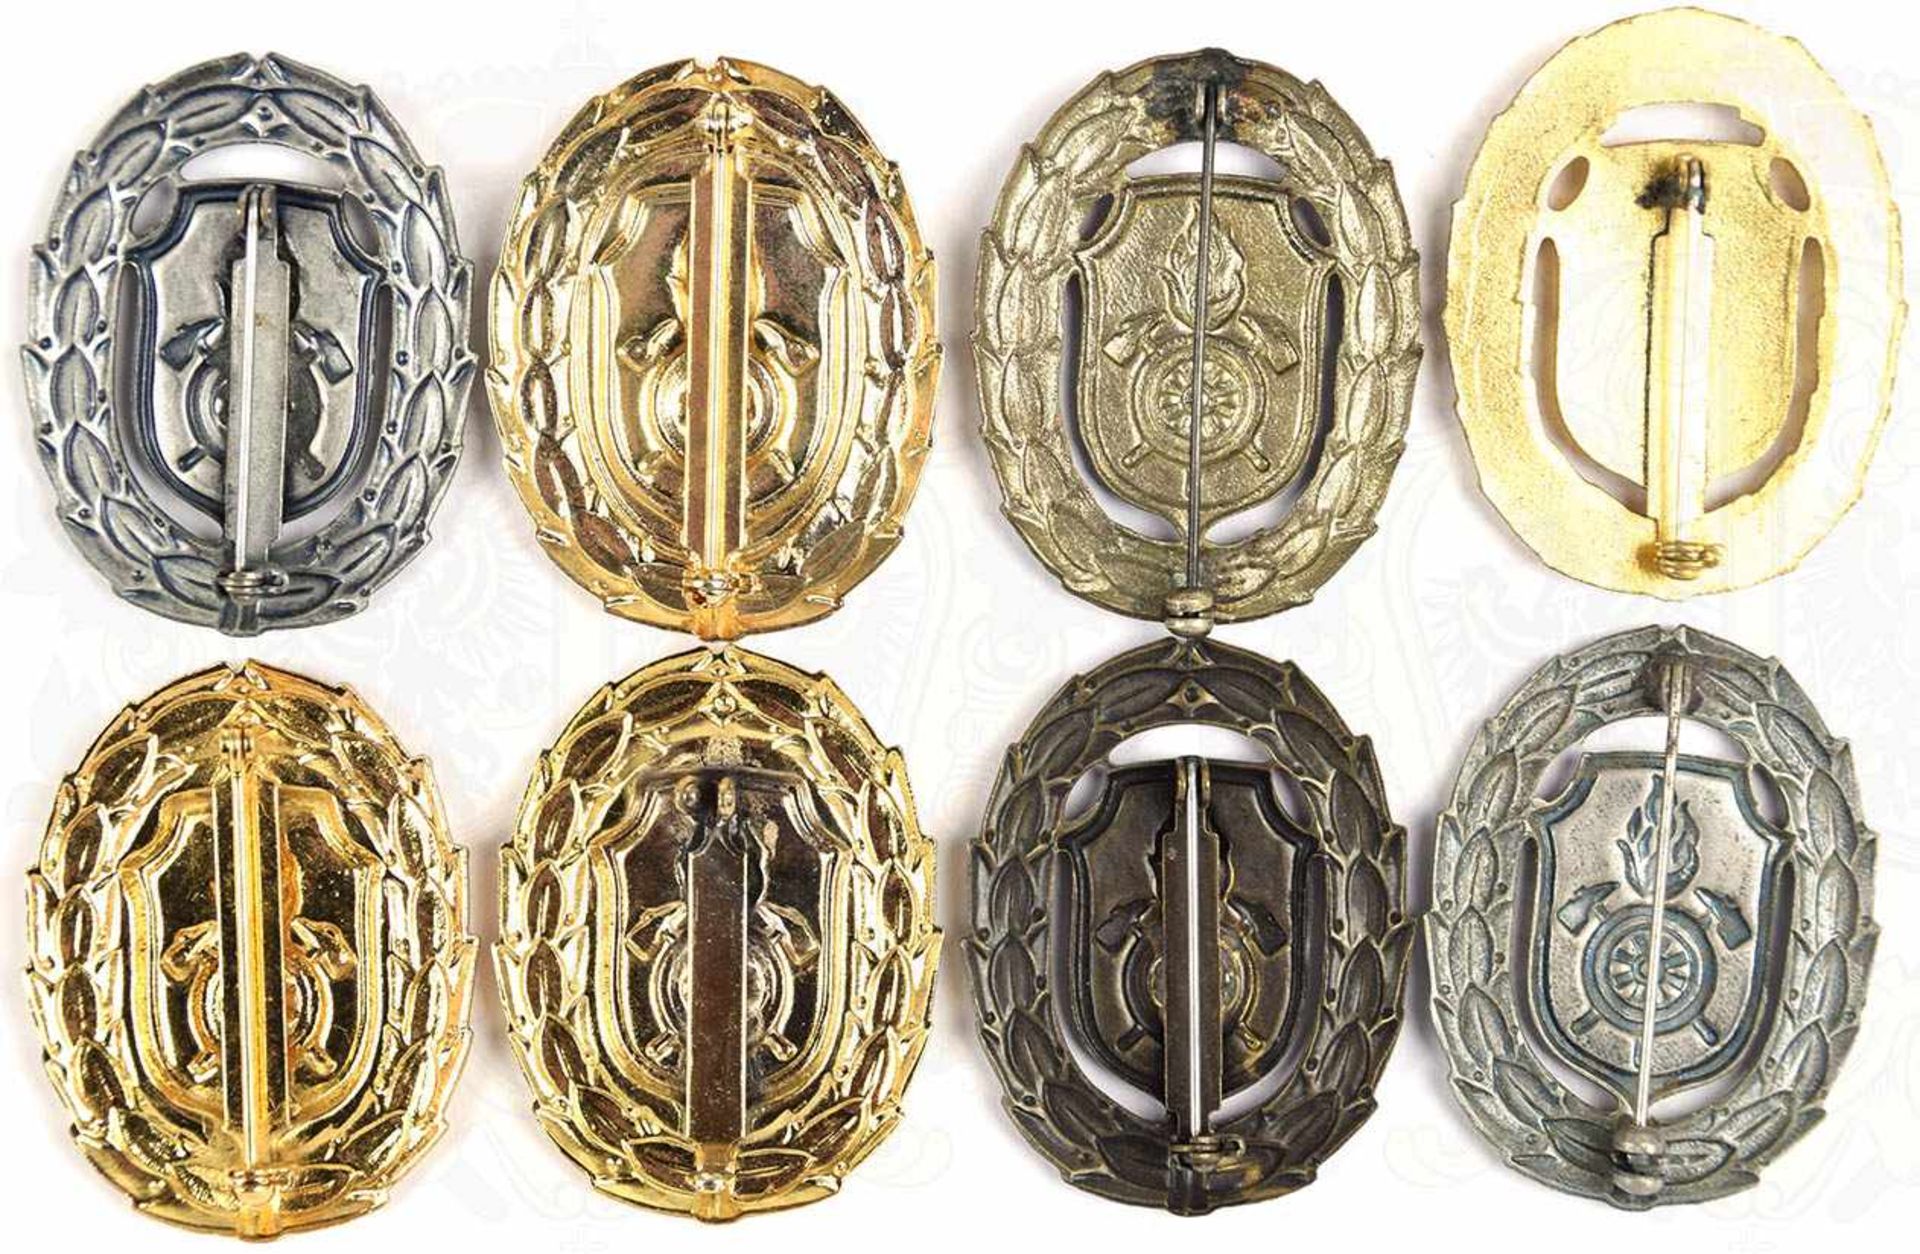 8 FEUERWEHR-LEISTUNGSABZEICHEN BAYERN, Bronze u. Silber, (je 2 St.), Gold, Gold/blau, Gold/grün u. - Bild 2 aus 2